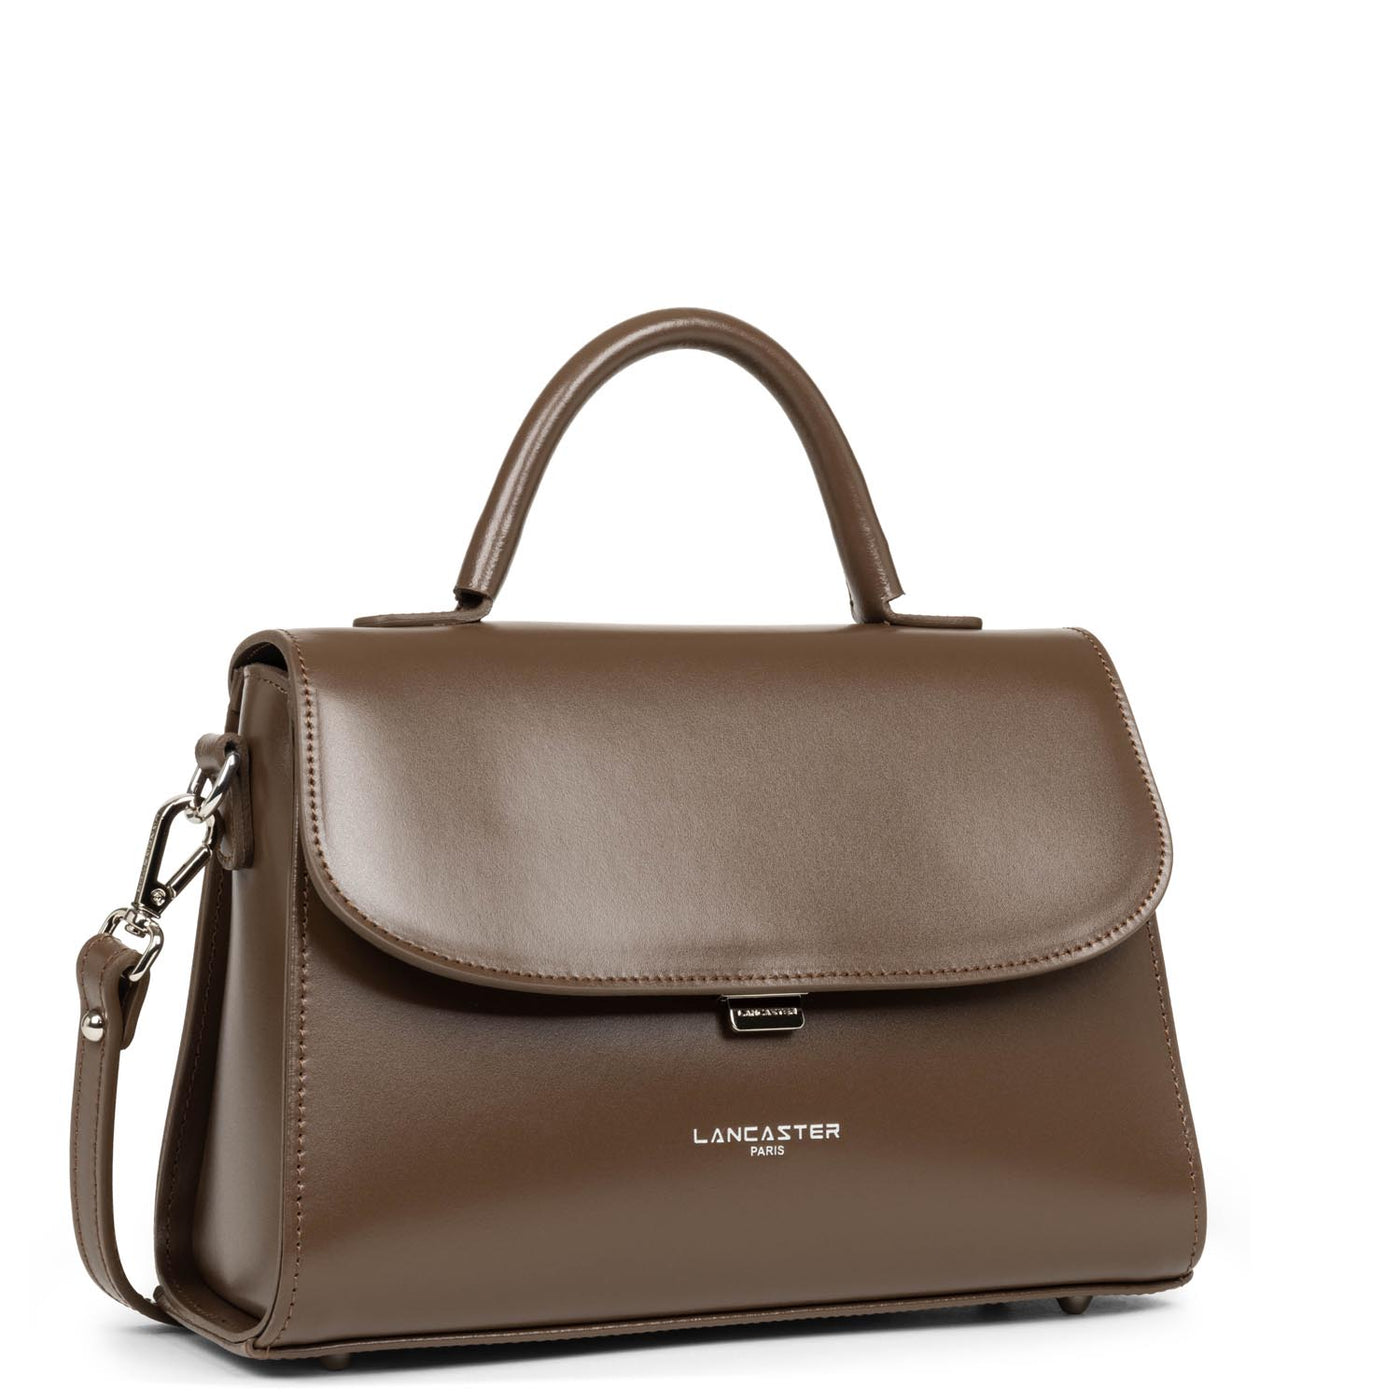 m handbag - suave even #couleur_marron